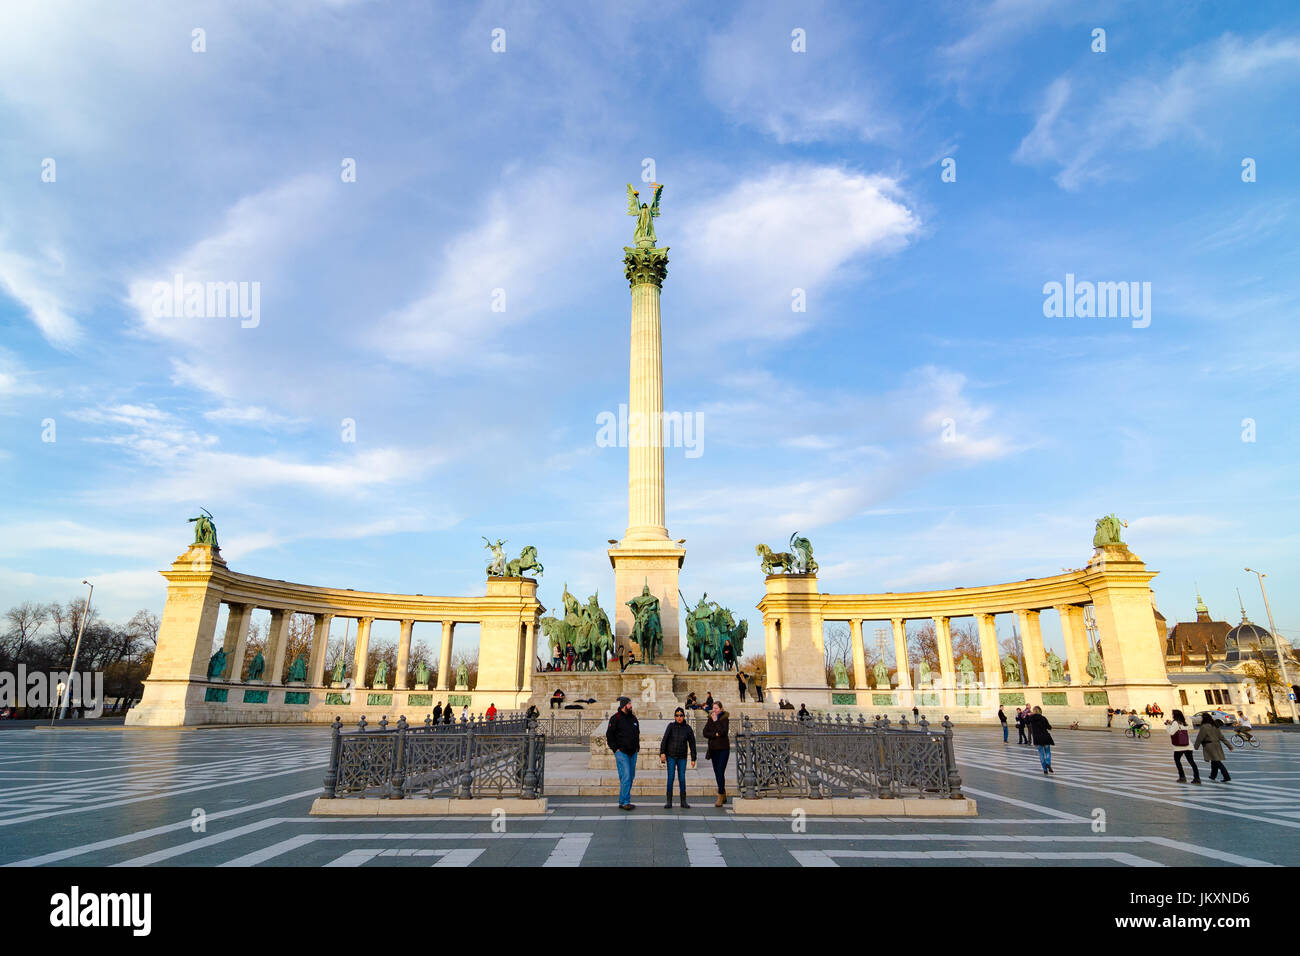 Budapest, Ungarn - 22. Februar 2016: Millennium Monument am Platz der Helden - hosok tere ist einer der wichtigsten Plätze in Budapest, Ungarn. Stockfoto